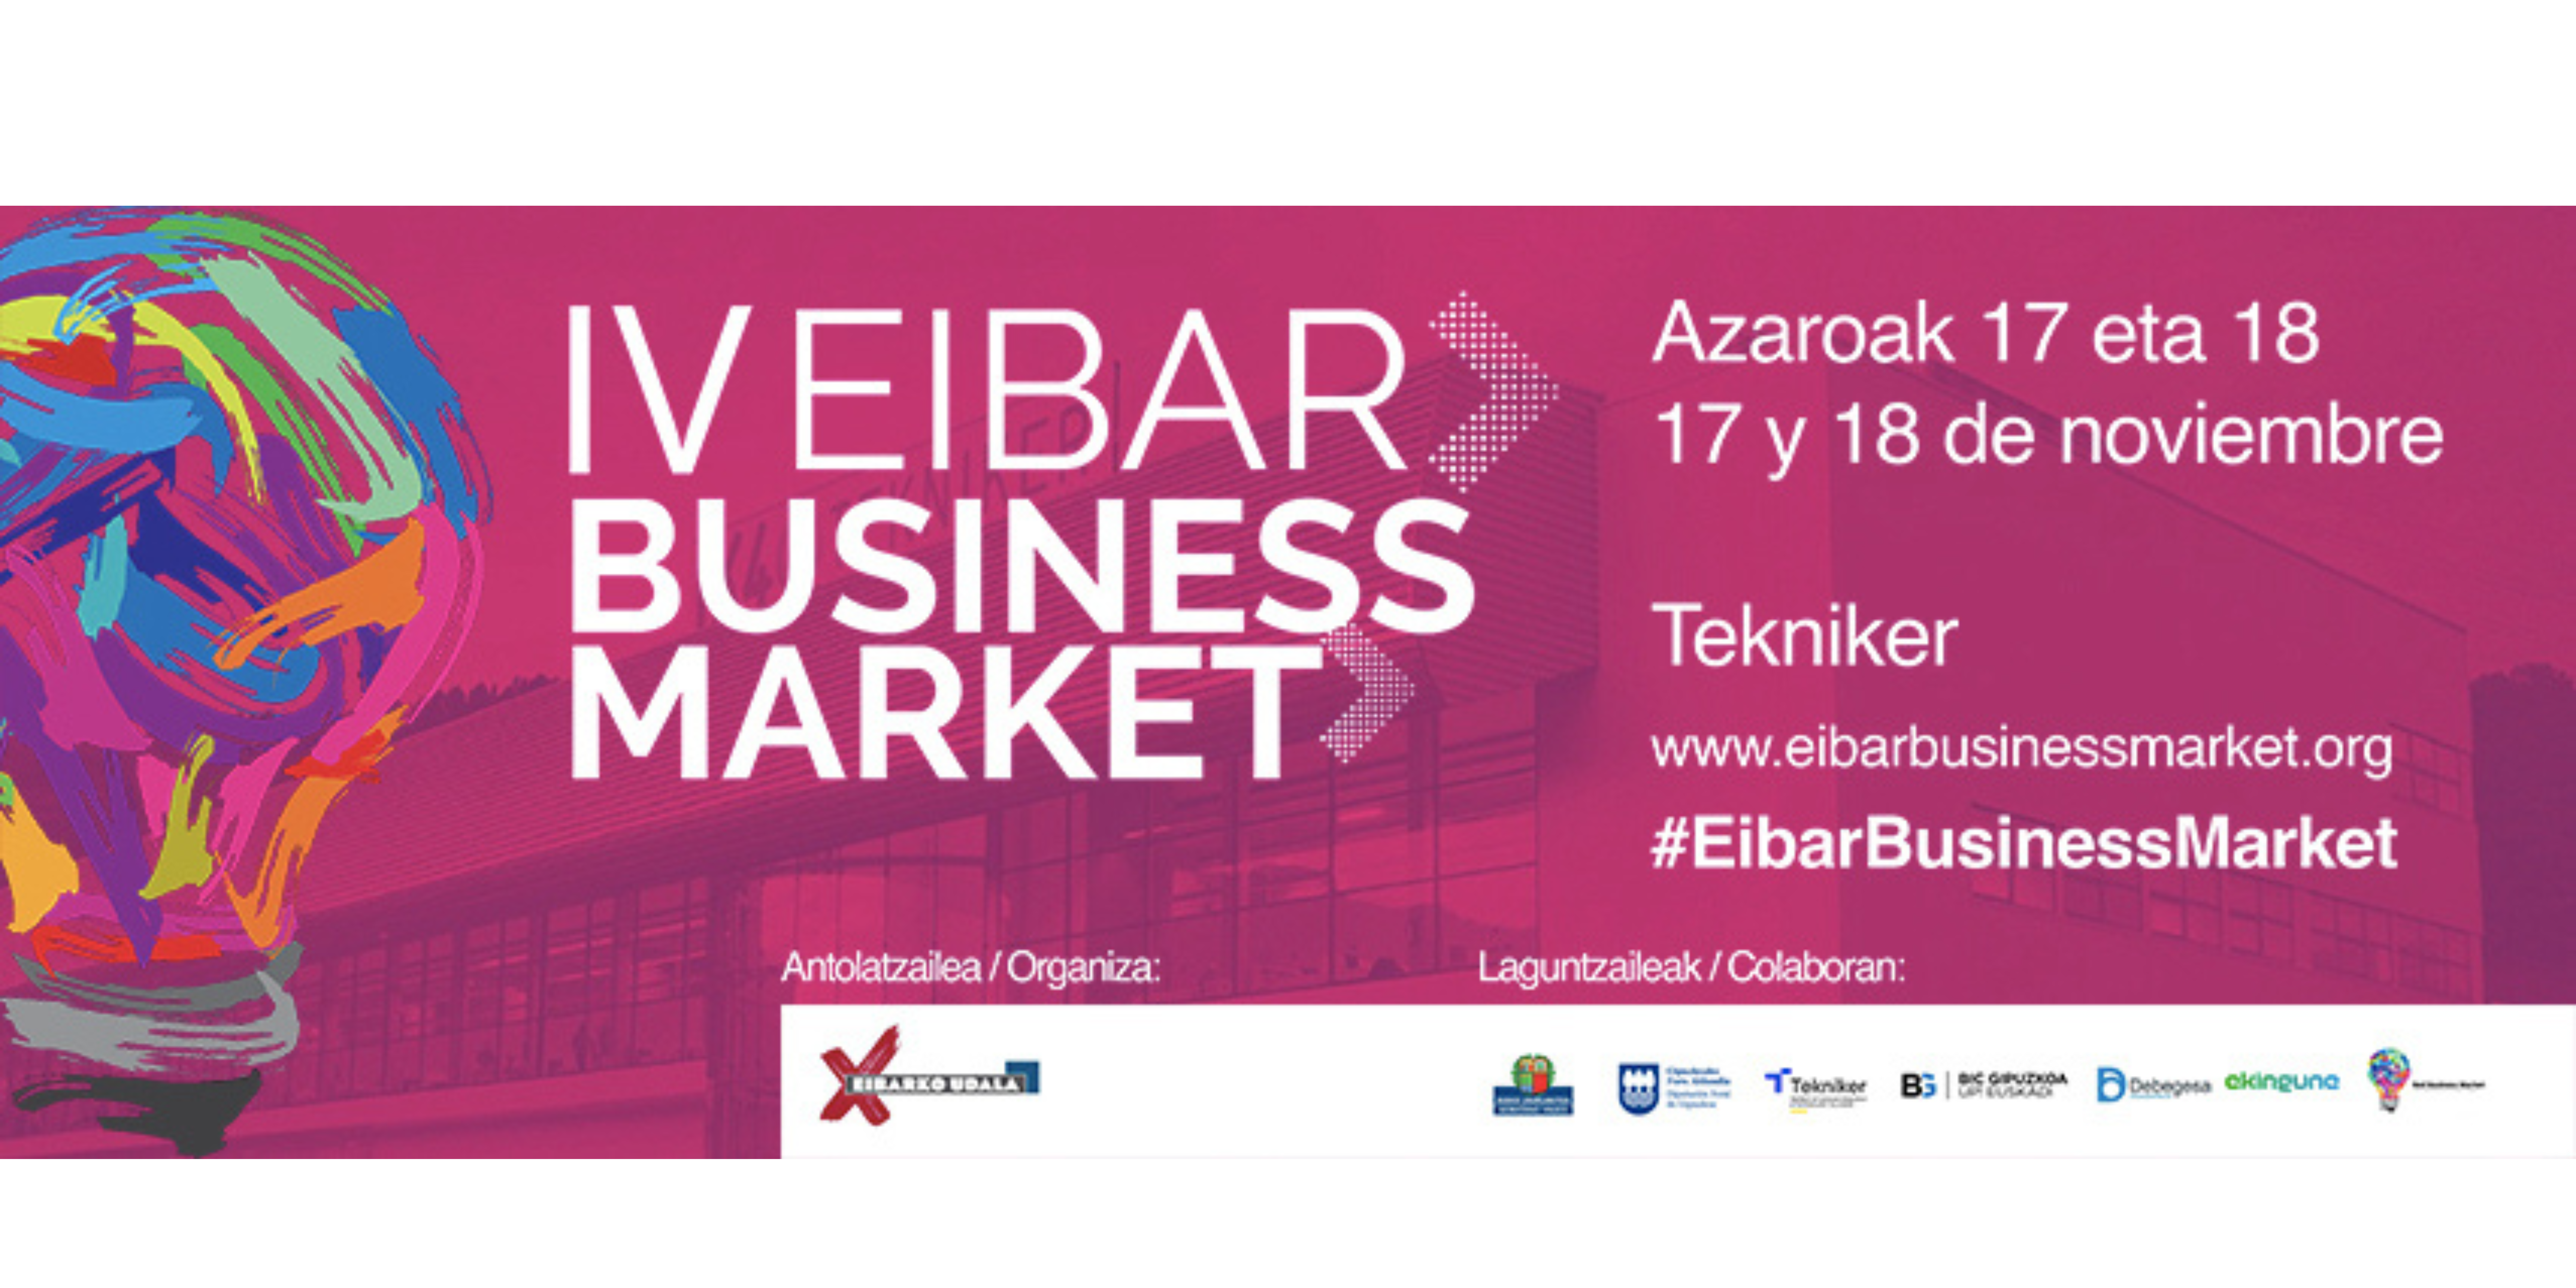 Eibar Business Market ekimenaren IV. edizioa streaming bidez emango da, Udalaren YouTube kanalaren bidez, hilaren 17an eta 18an